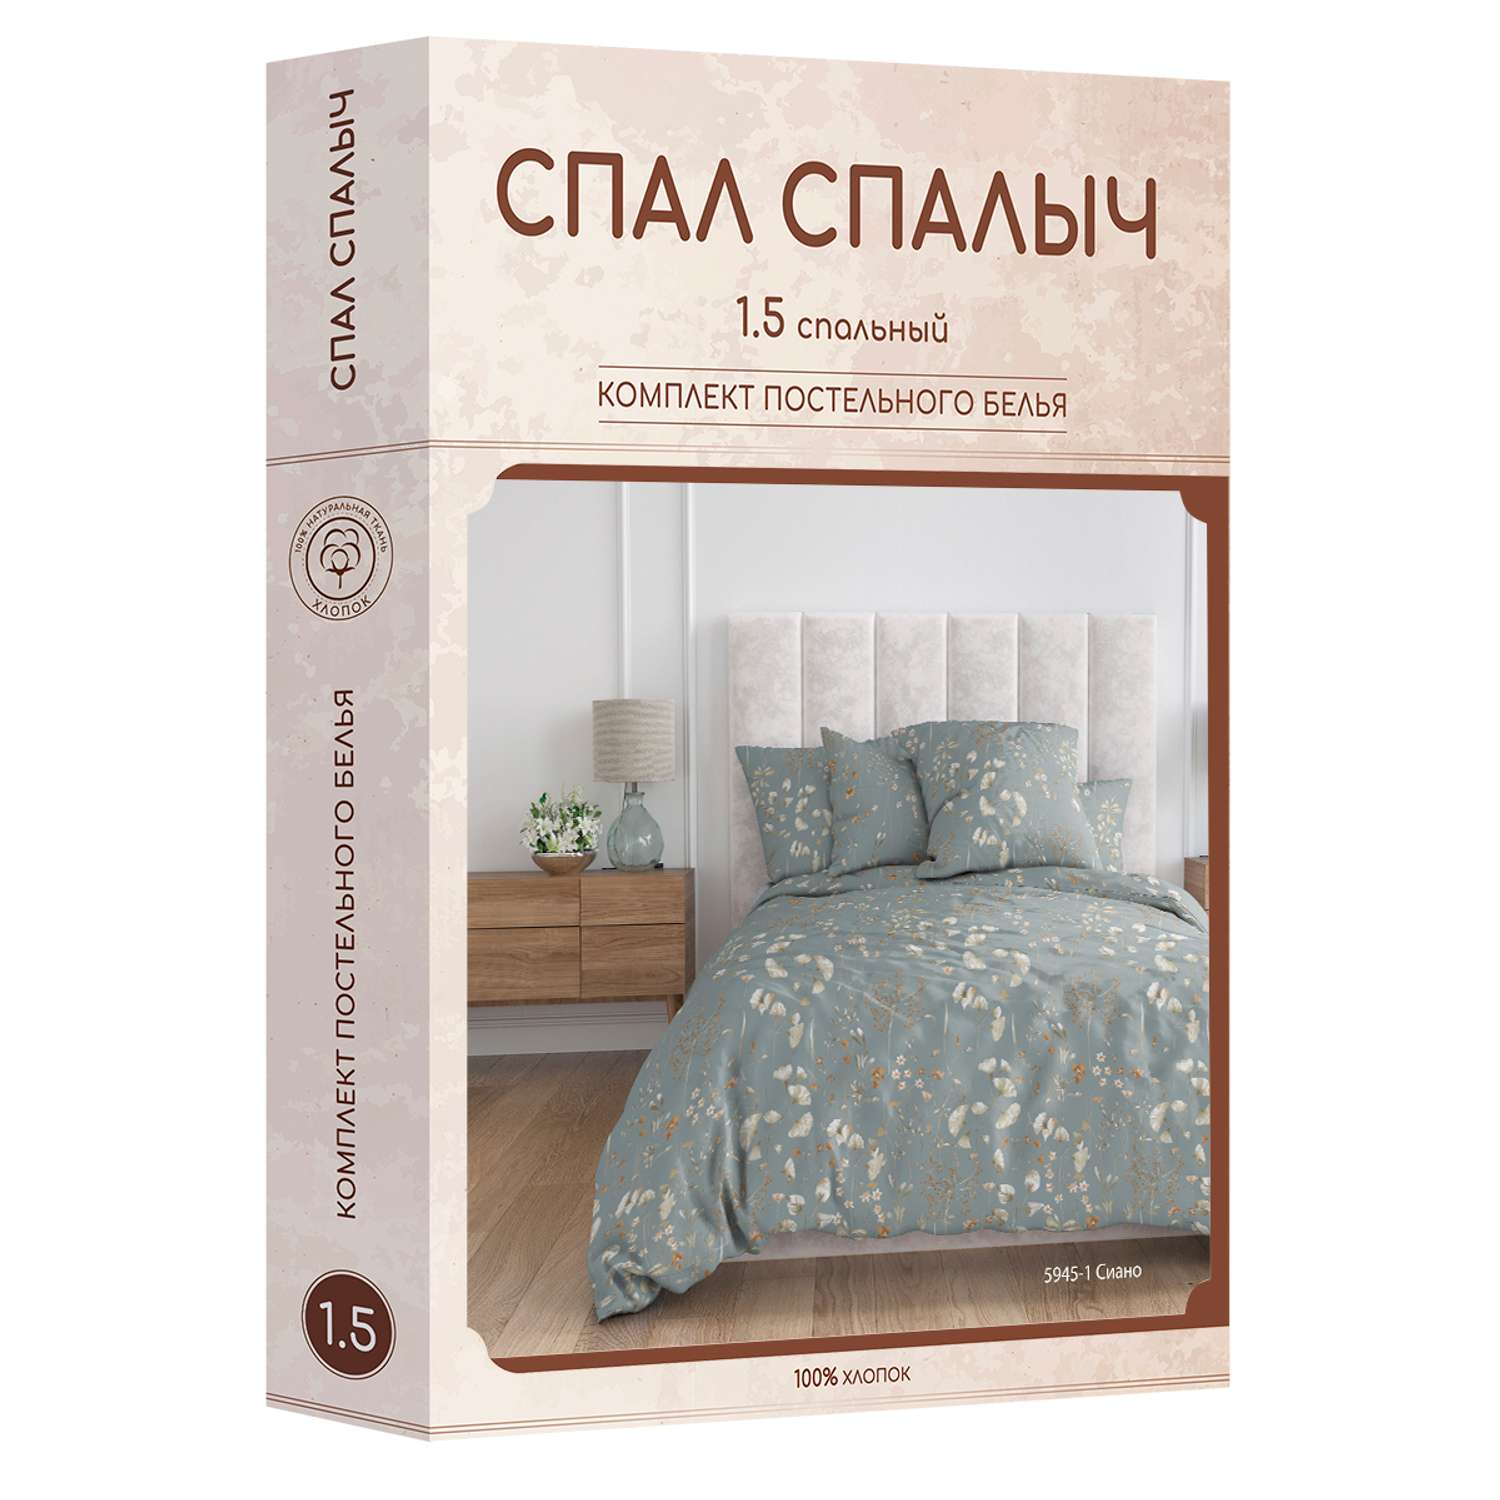 Комплект постельного белья Спал Спалыч Сиано 1.5-спальный - фото 11